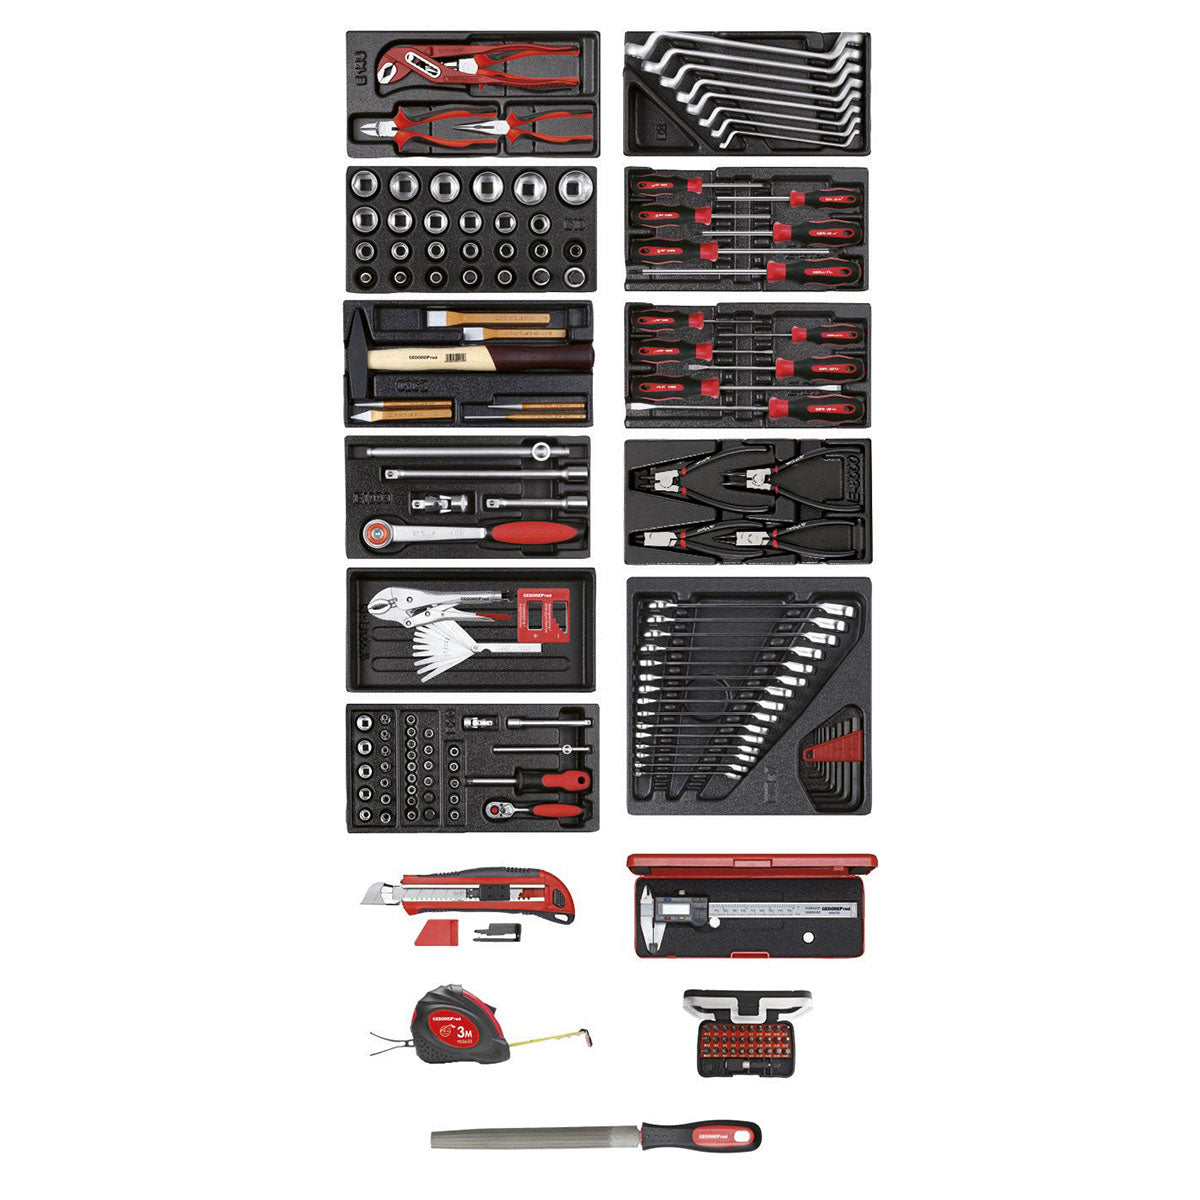 GEDORE rouge R21010002 - Coffret d'outils en 11 modules plastique, 167 pièces (3301657)